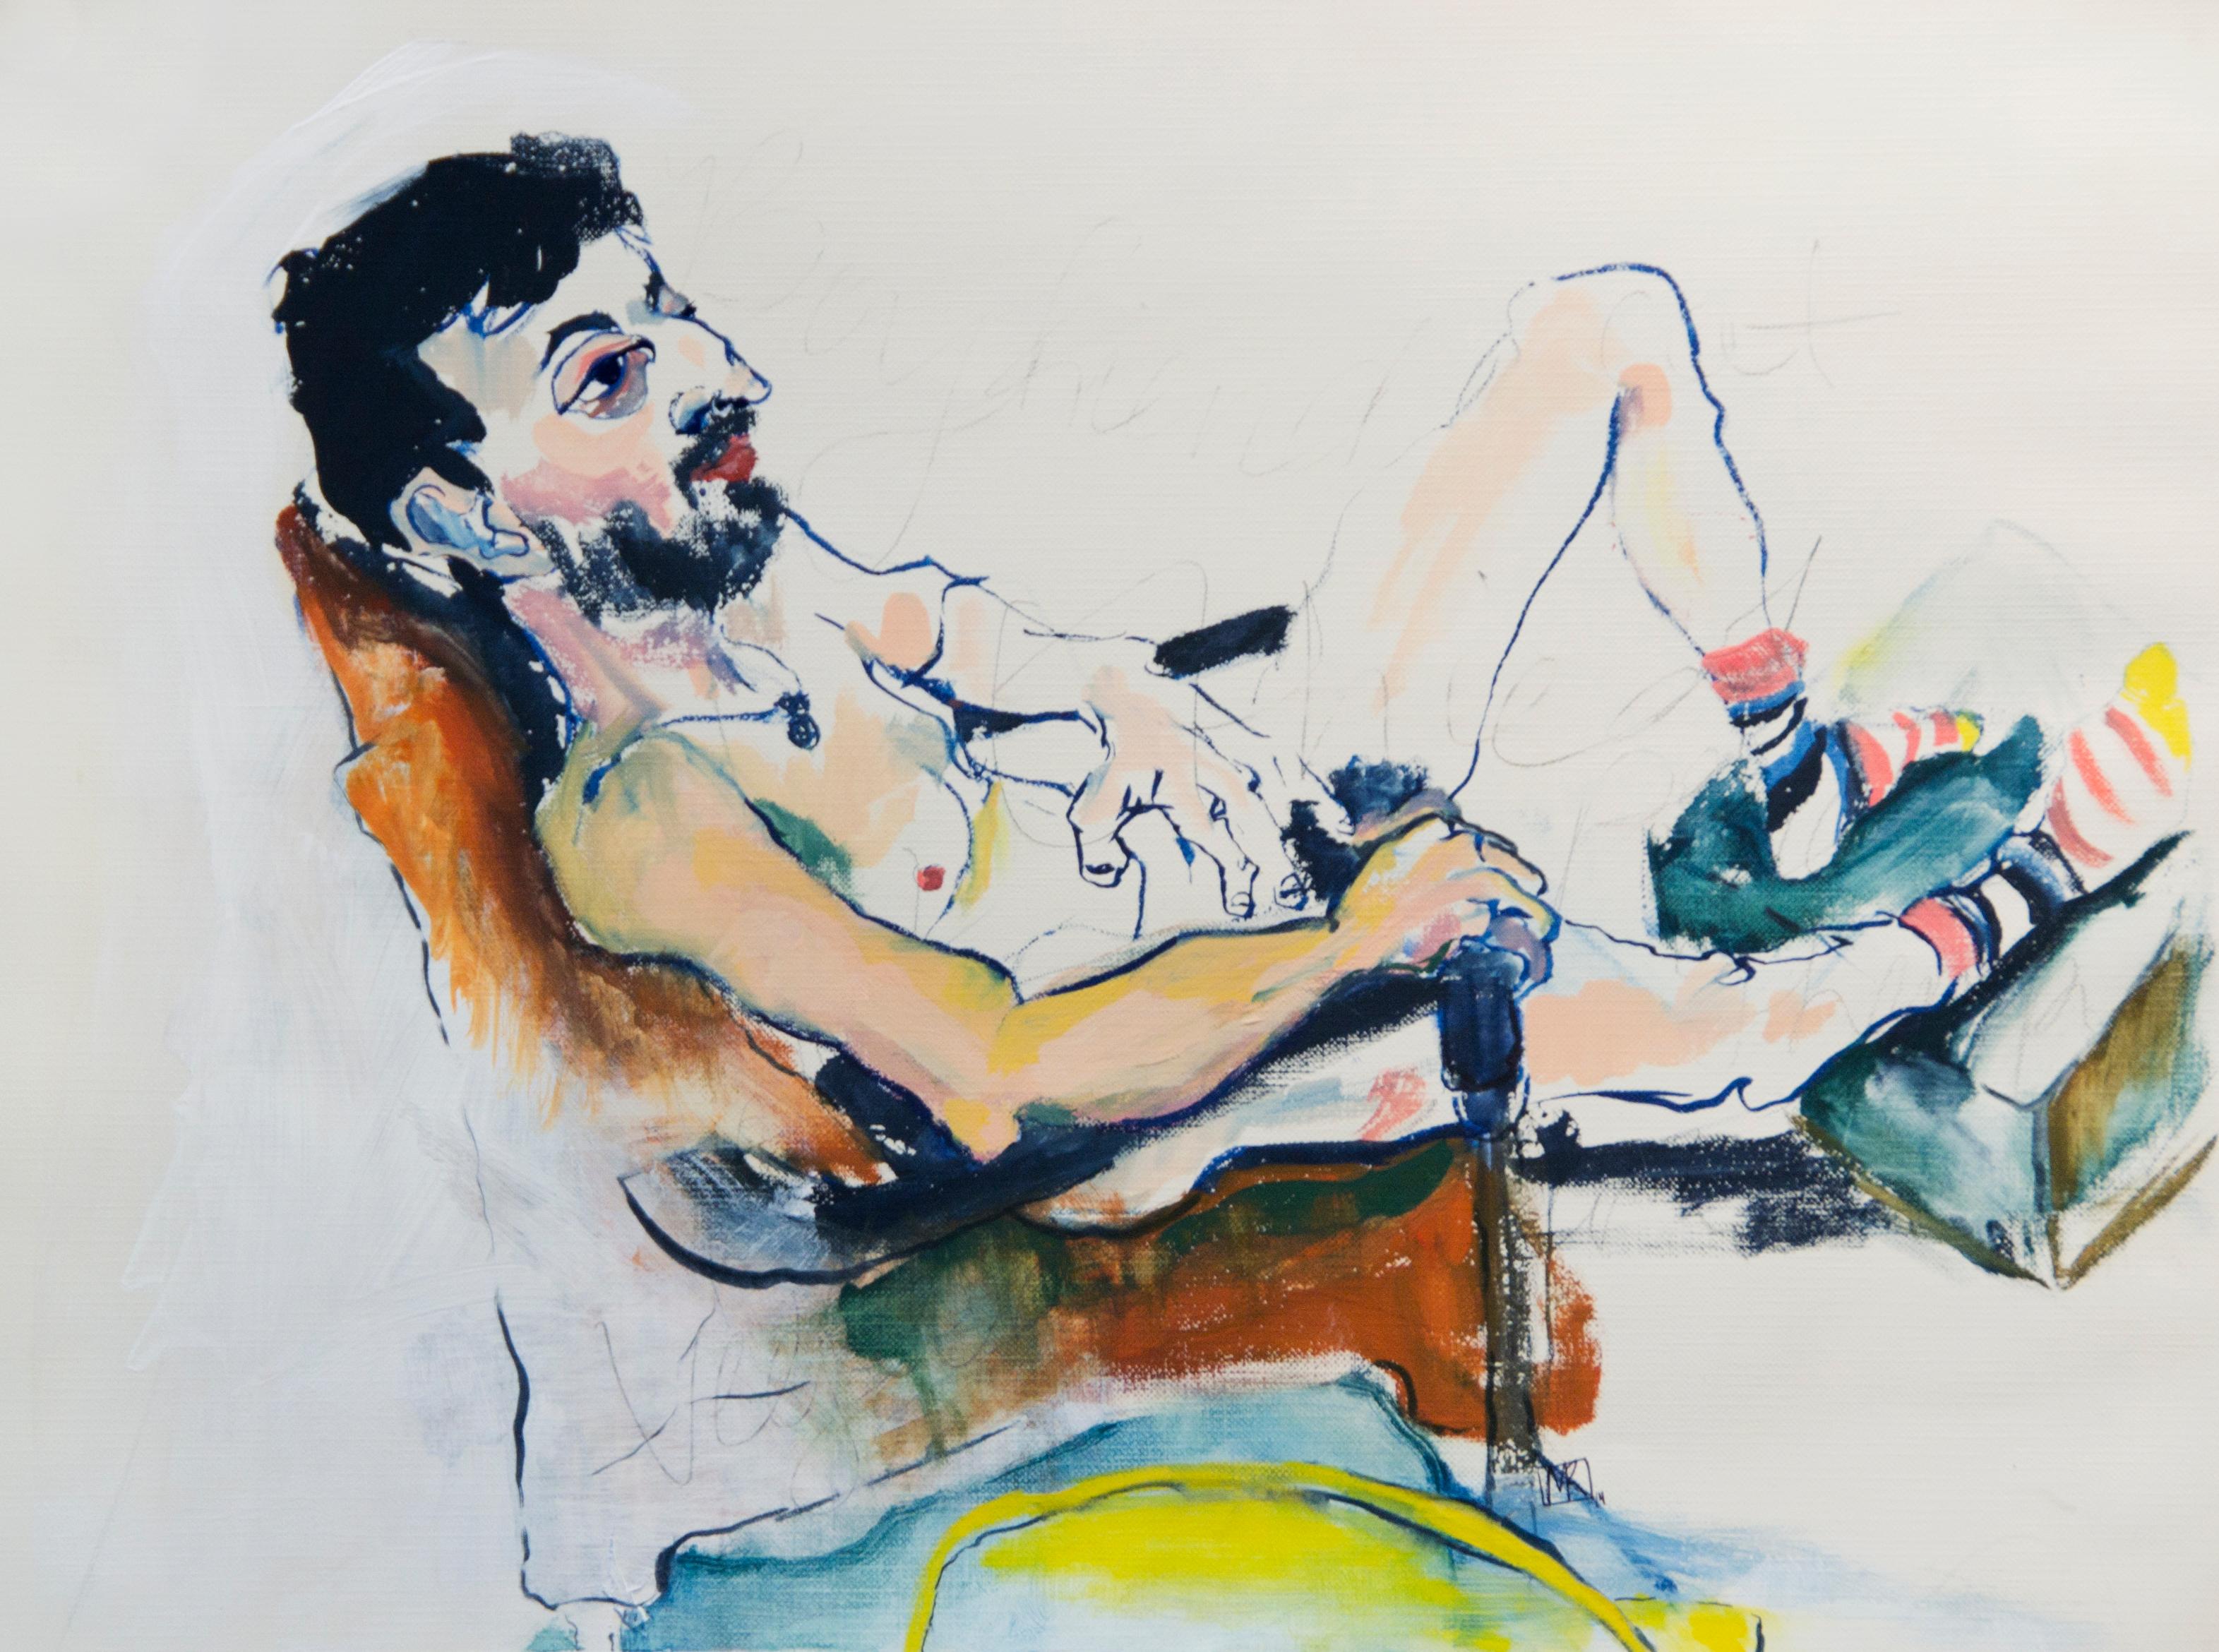 ""Danny", liegende nackte Figur, Gemälde mit Bleistift, Gouache und Acryl auf Papier